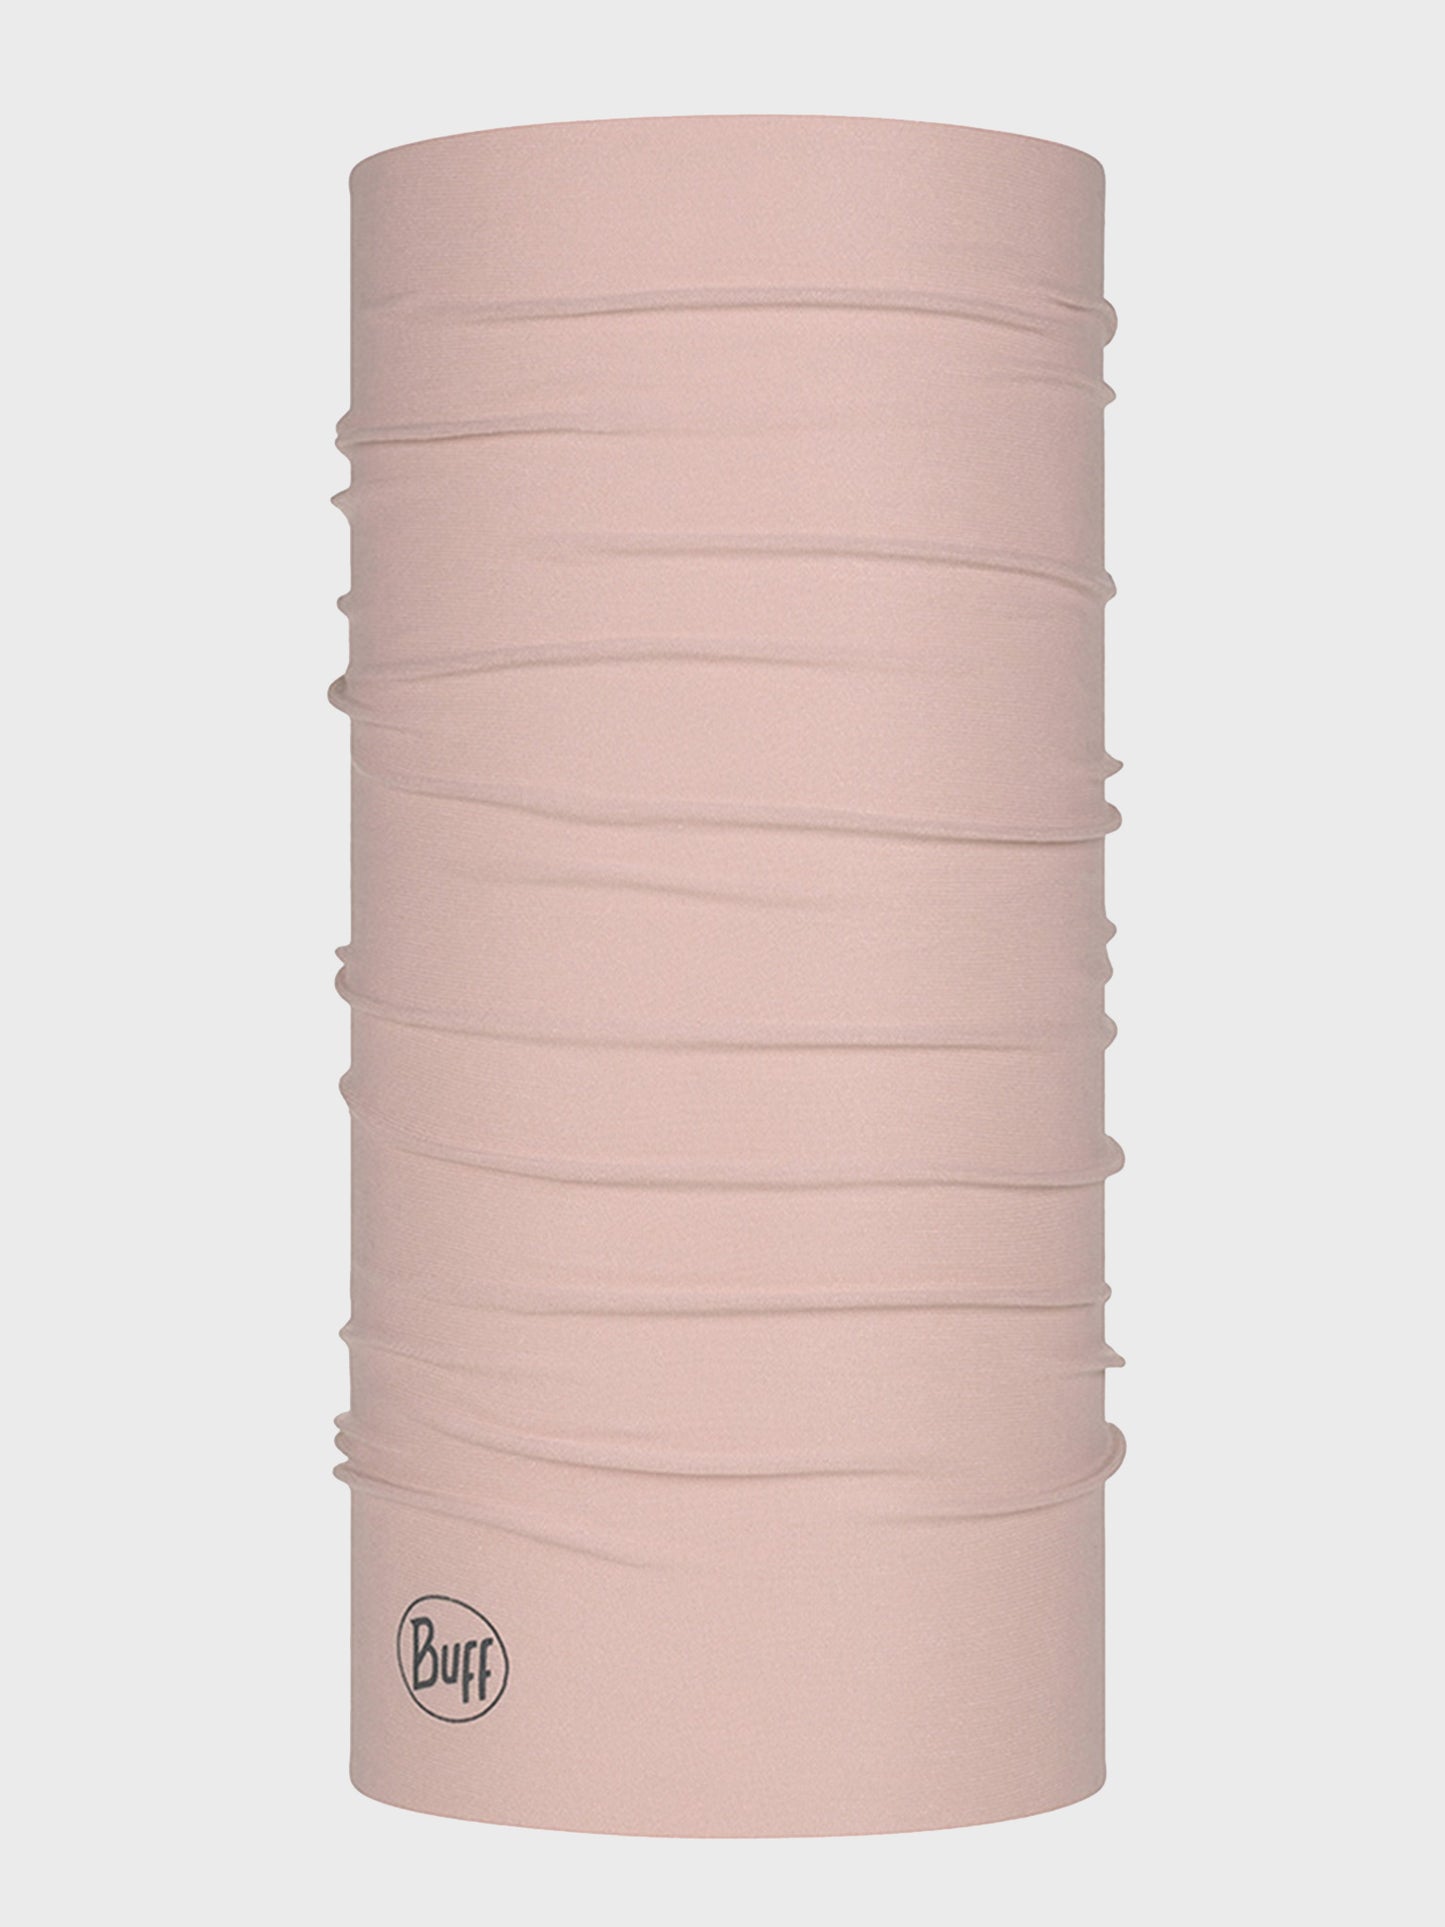 Buff Pink Lightweight Merino Wool Multi-Functional Headwear